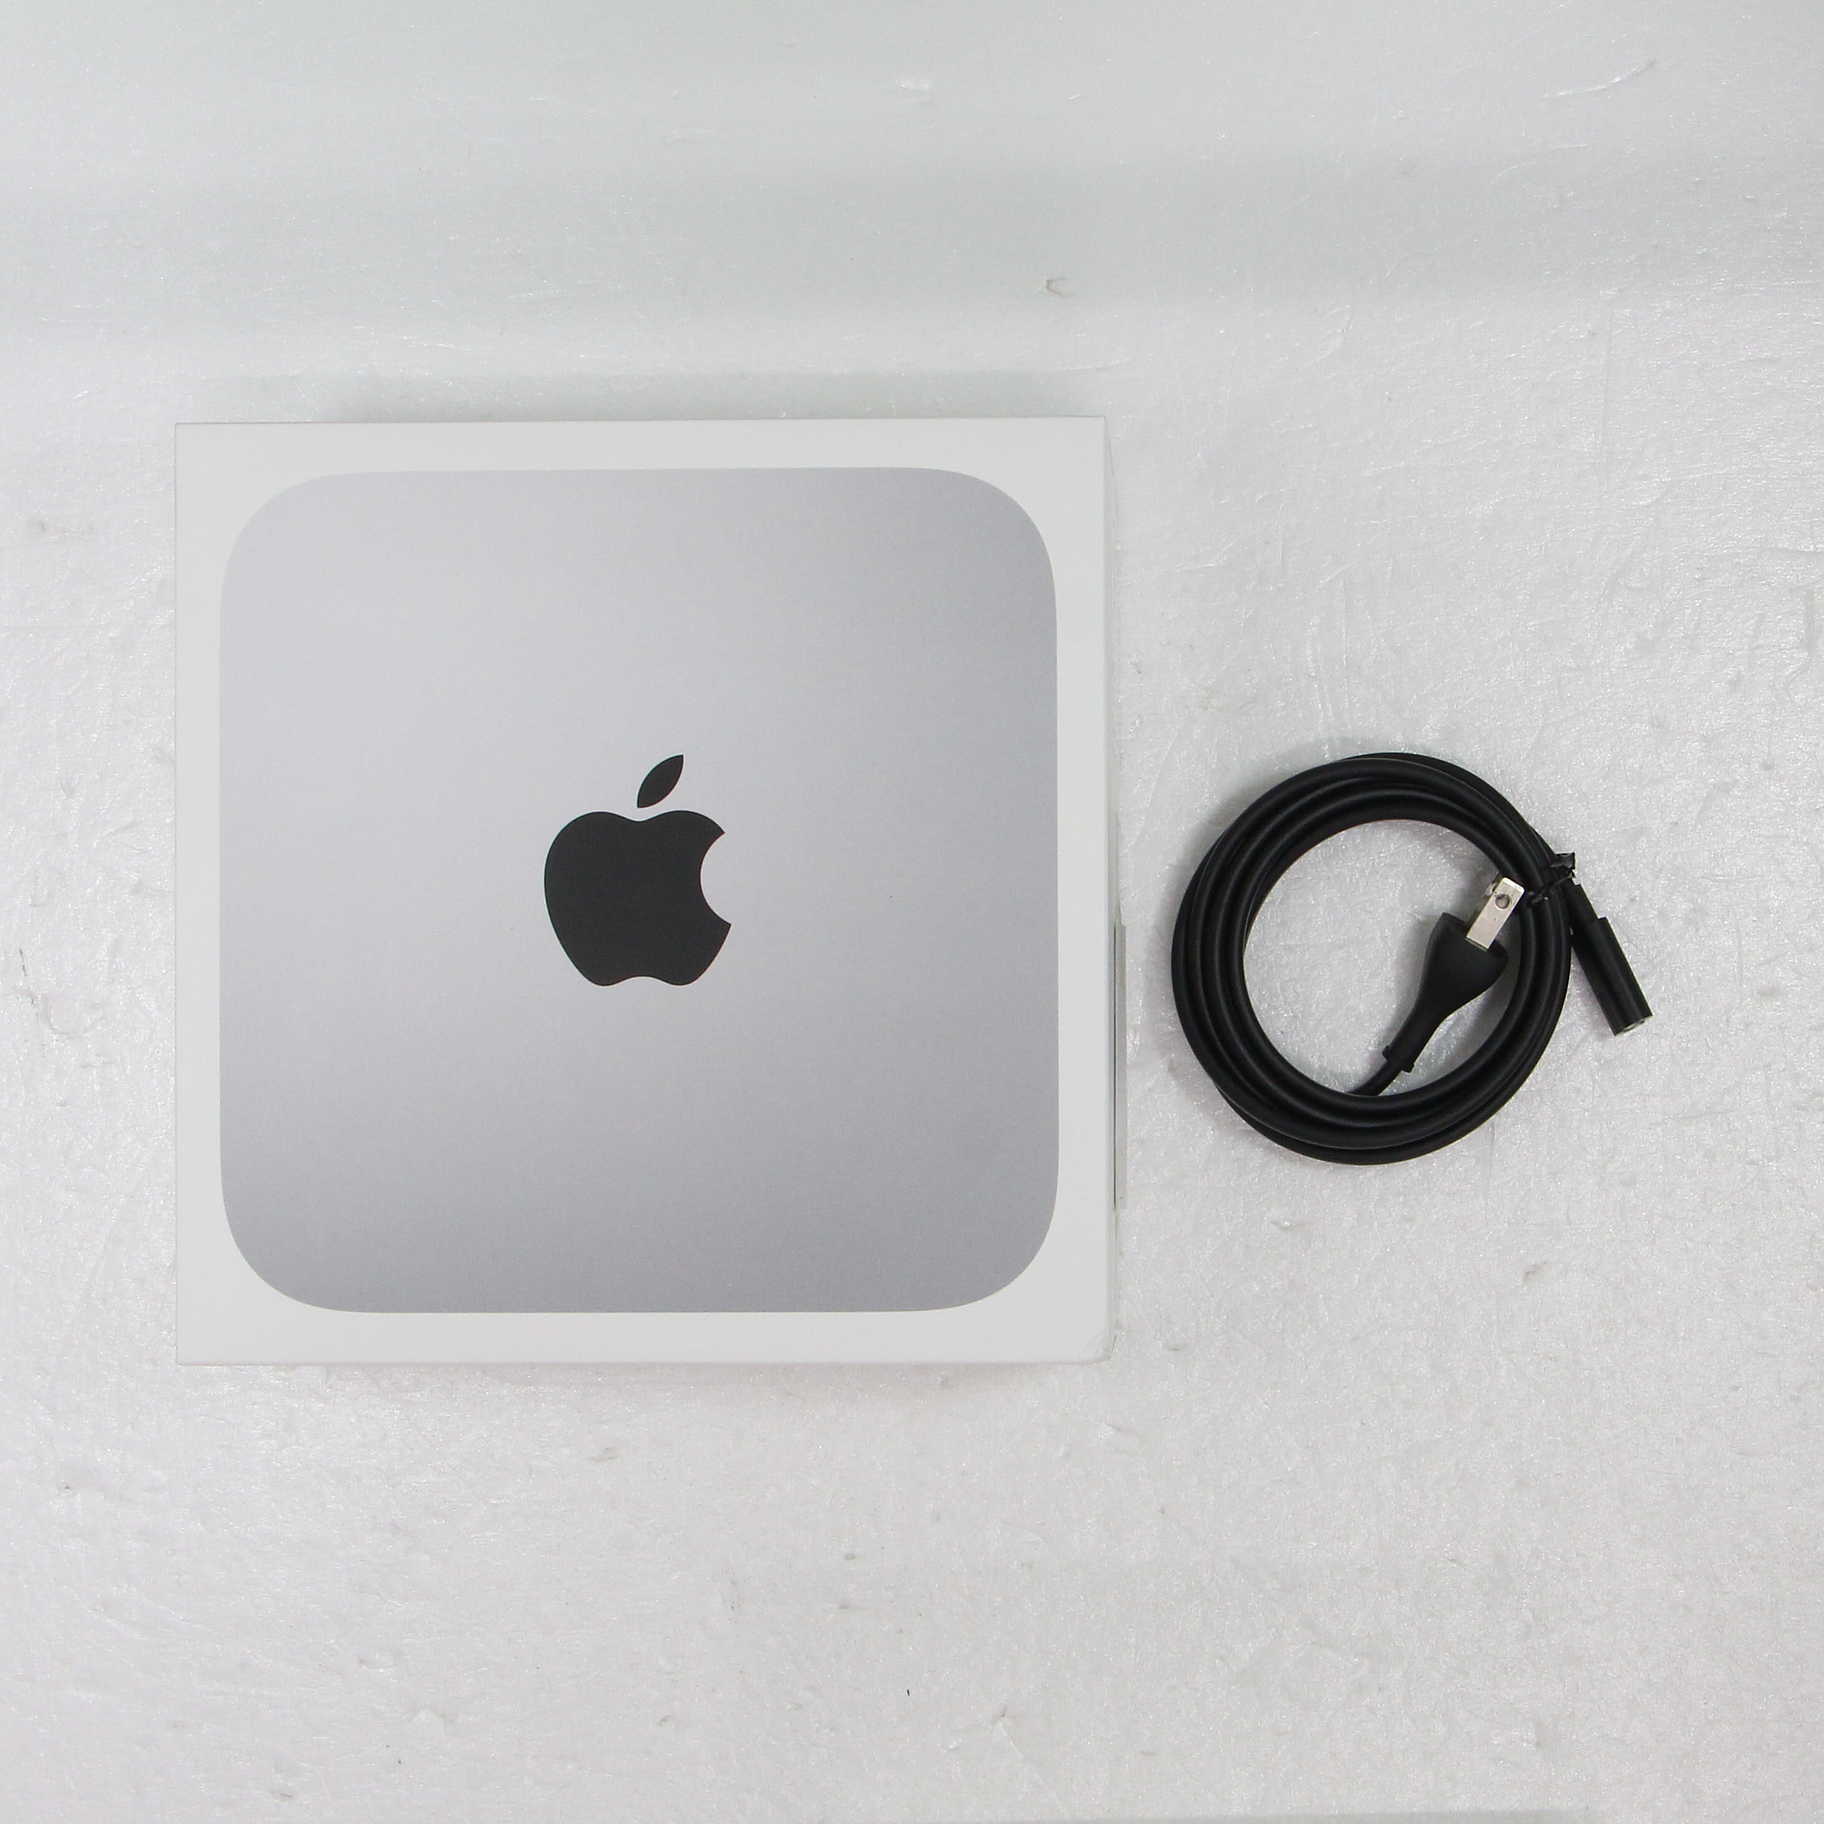 Apple Mac mini  M2チップ搭載 MMFK3J/A